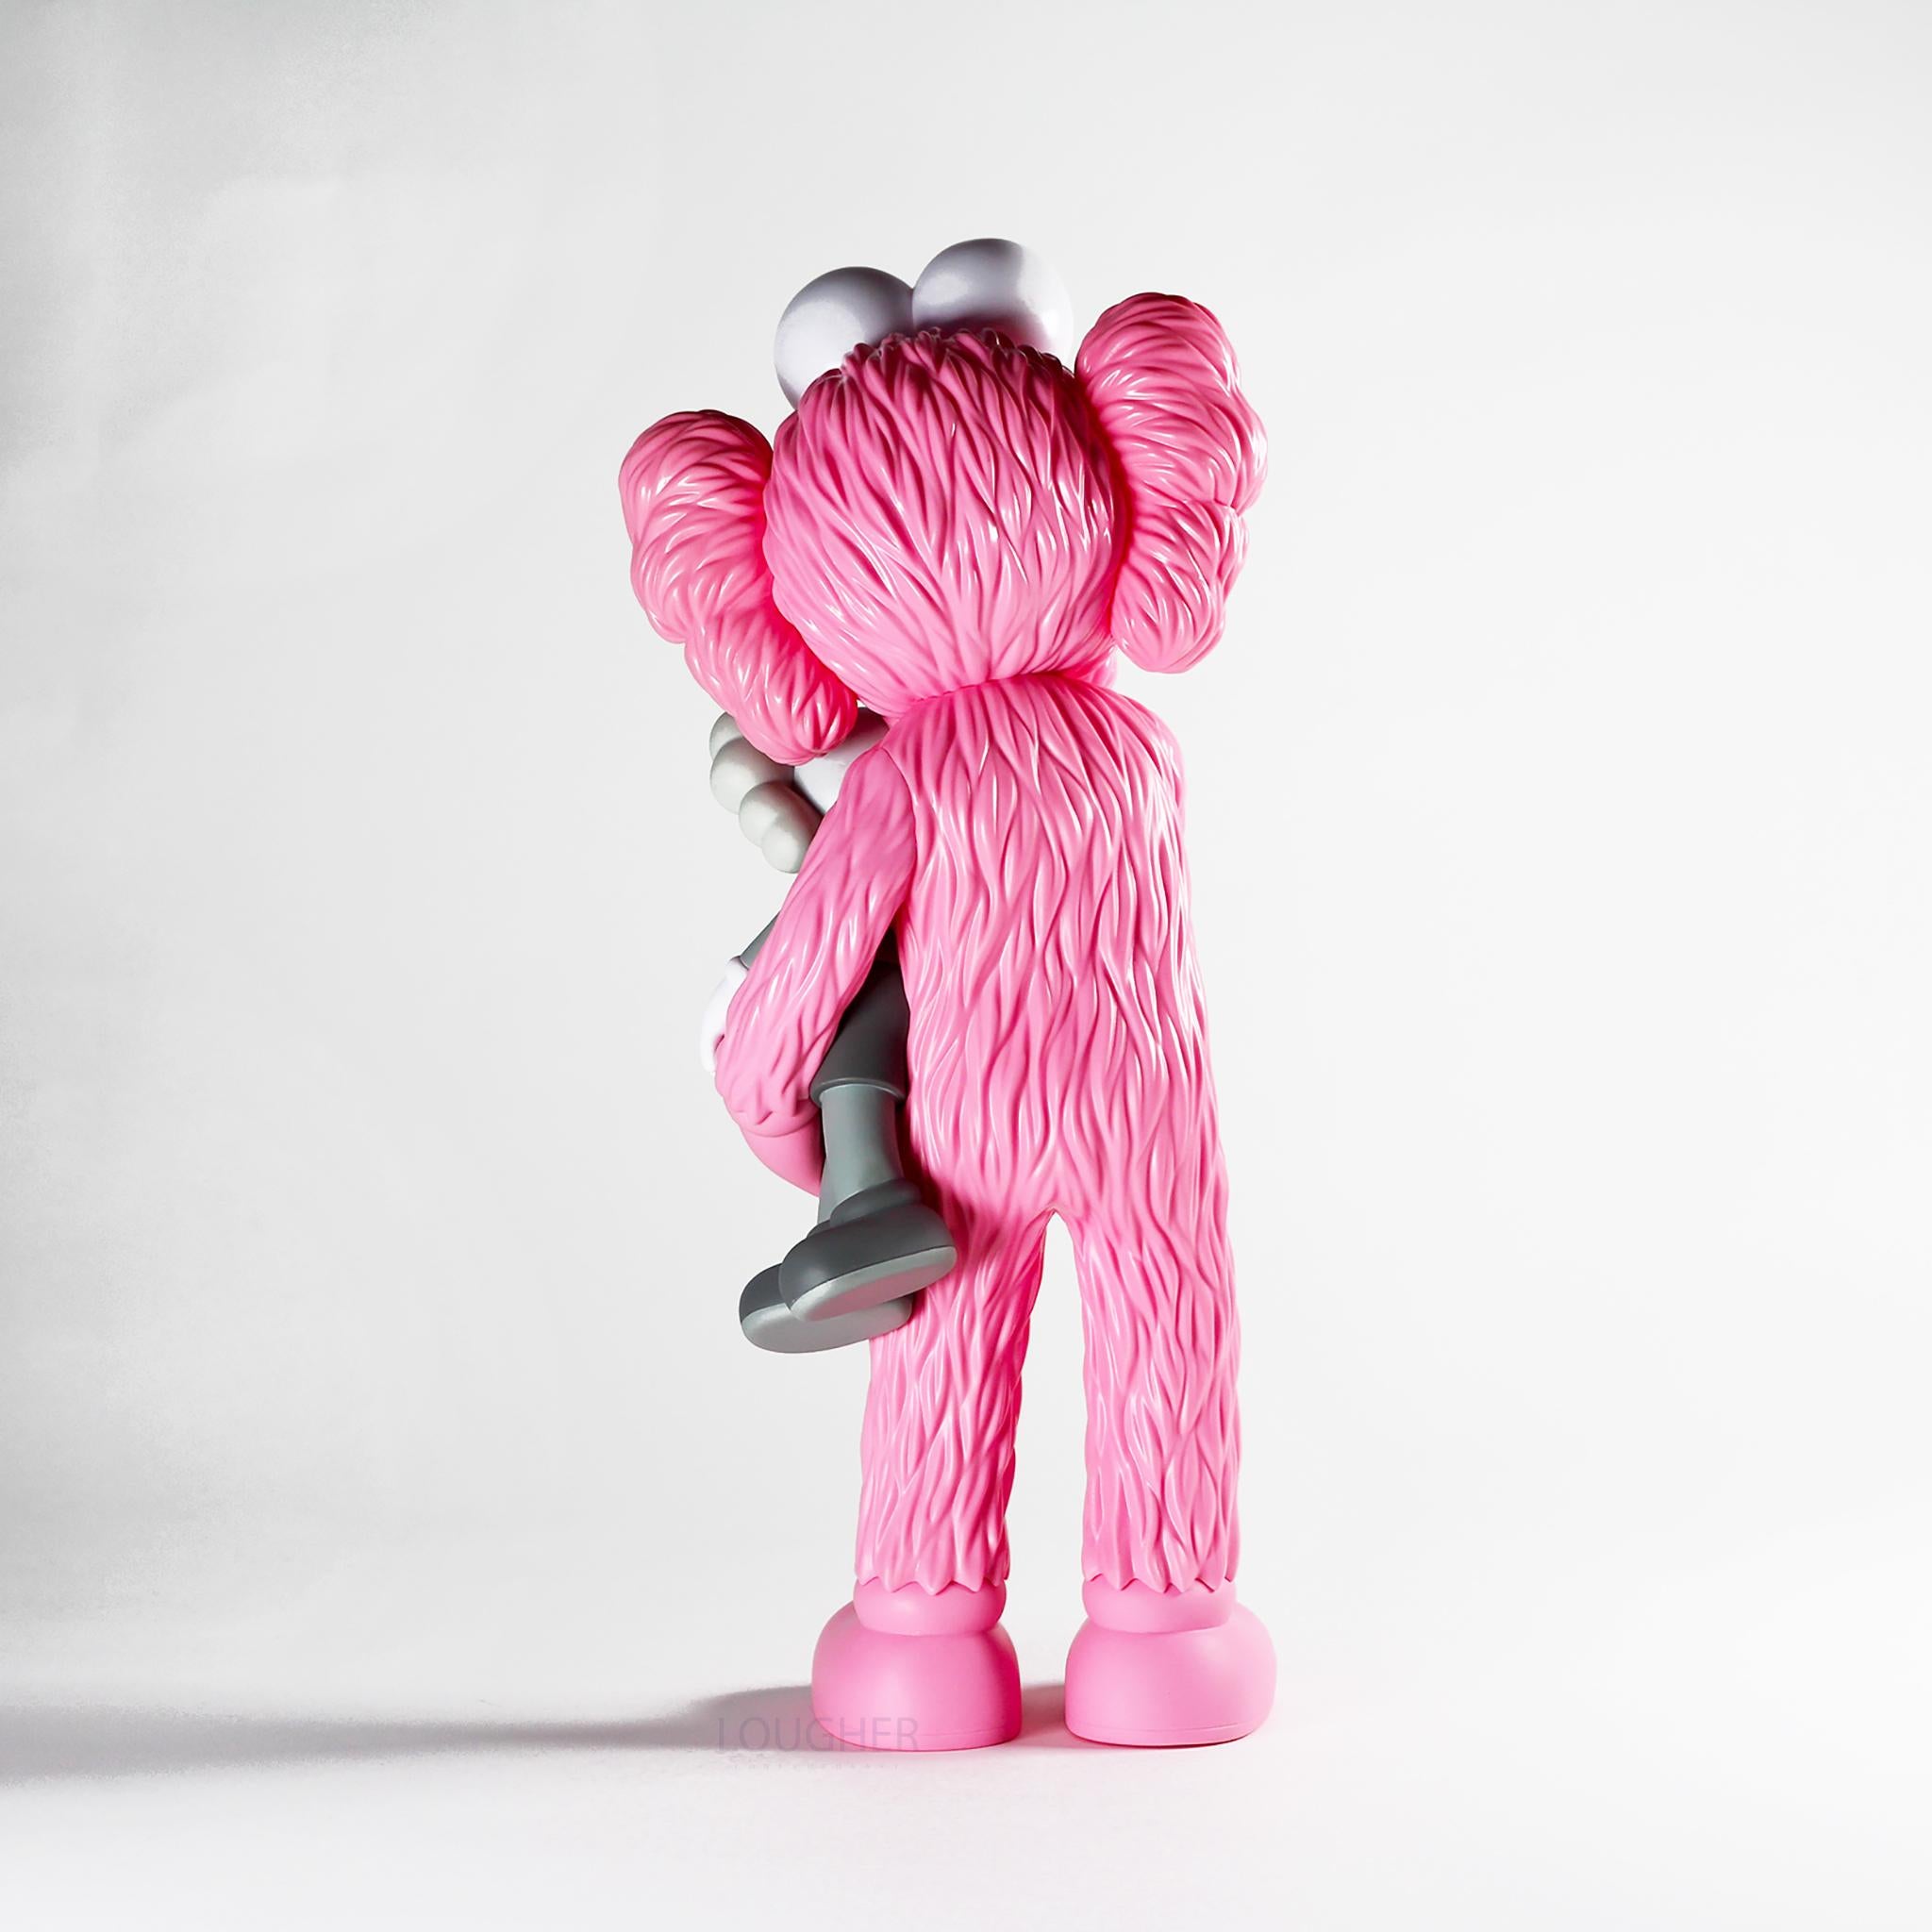 Take (Pink) - Sculpture by KAWS